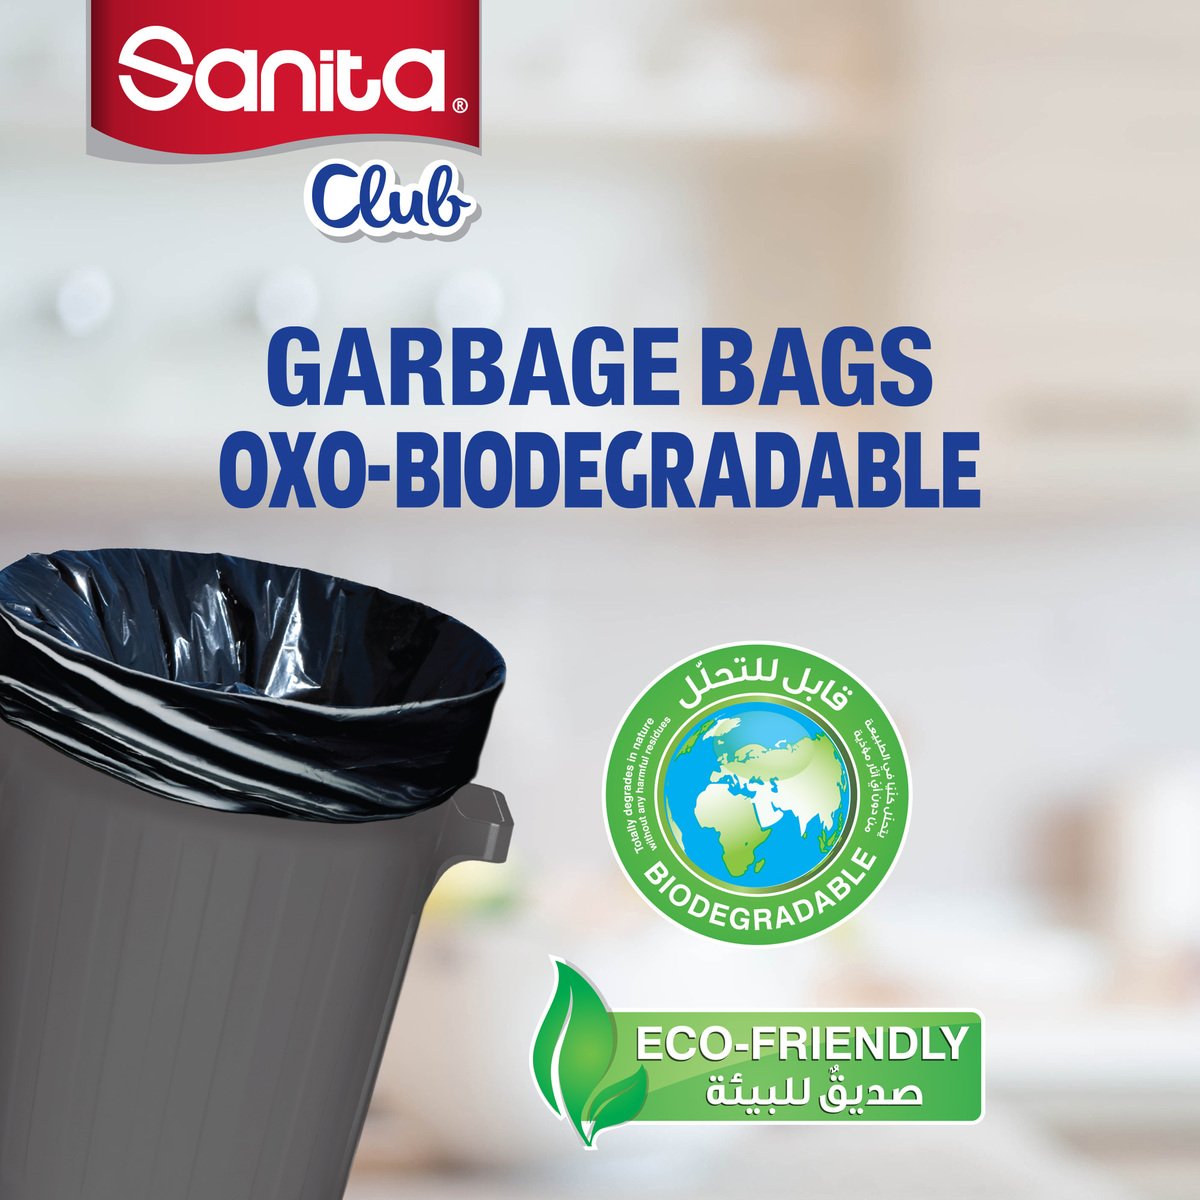 Sanita Club Garbage Bags Oxo-Biodegradable 70 Gallons XX-Large Size 125 x 105cm 2 x 10pcs